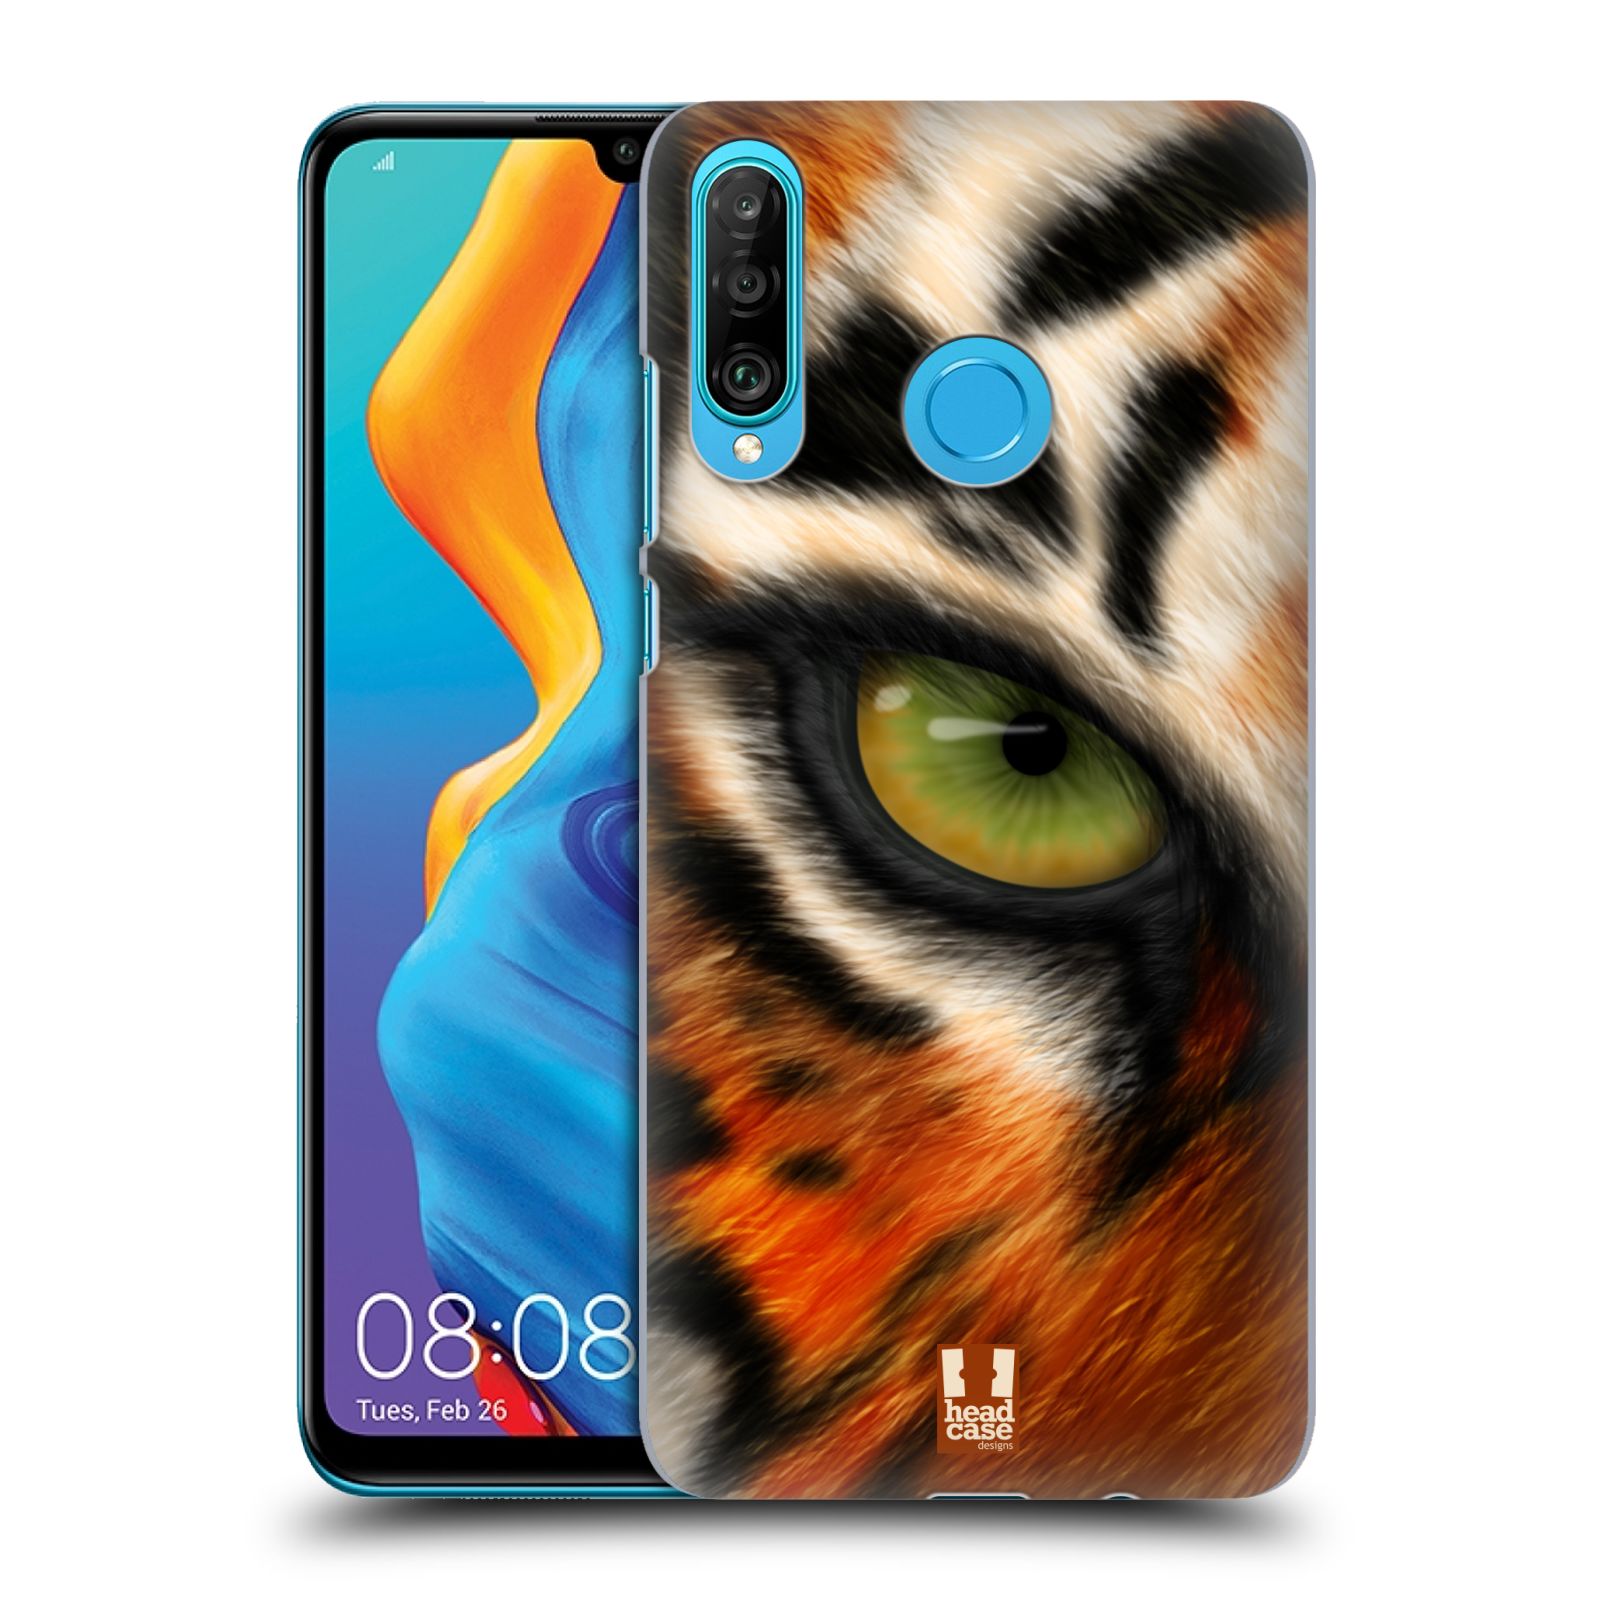 Pouzdro na mobil Huawei P30 LITE - HEAD CASE - vzor pohled zvířete oko tygr